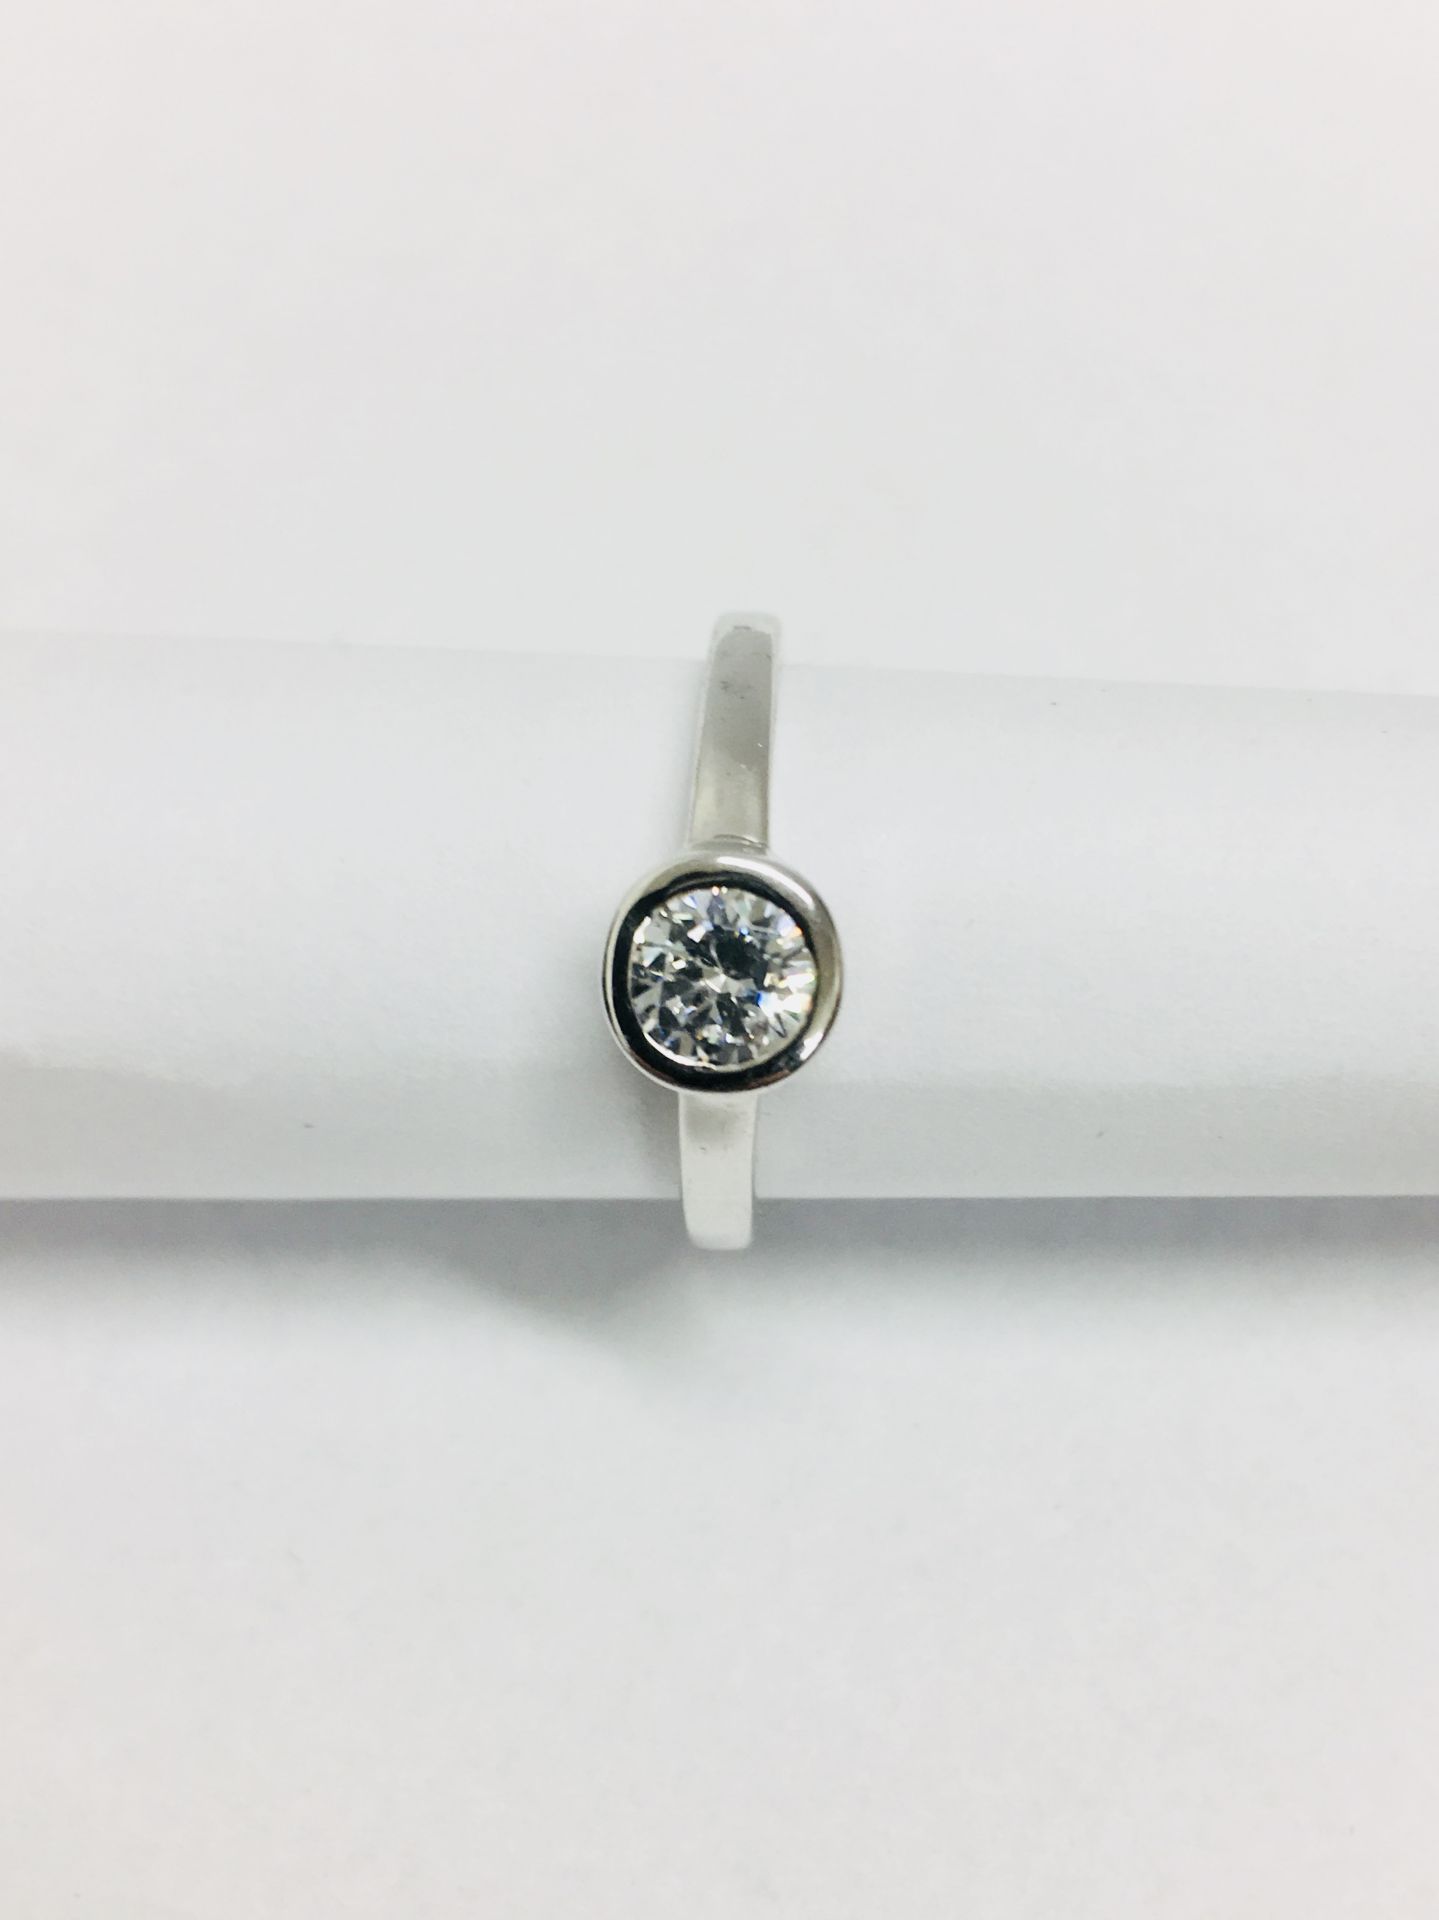 Platinum diamond solitaire ring,0.50ct brilliant cut diamond D colour vs clarity,Platinum rubover